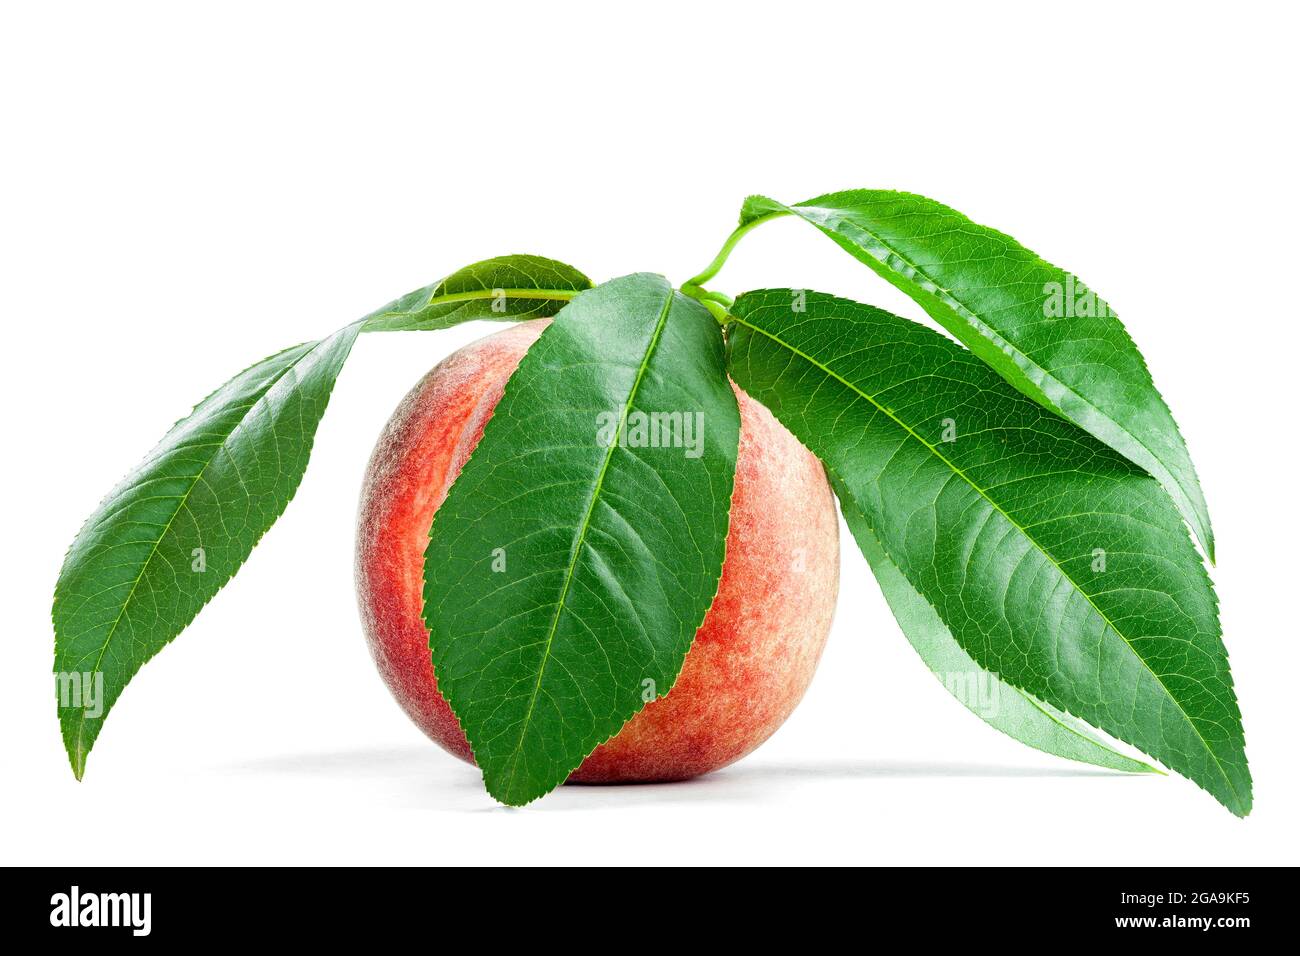 Reife, samtige Pfirsichfrucht in einer Schale mit grünen Blättern, frische, ganze noctarine Agrarfrucht mit einem grünen Blatt isoliert auf weißem Grund. Stockfoto